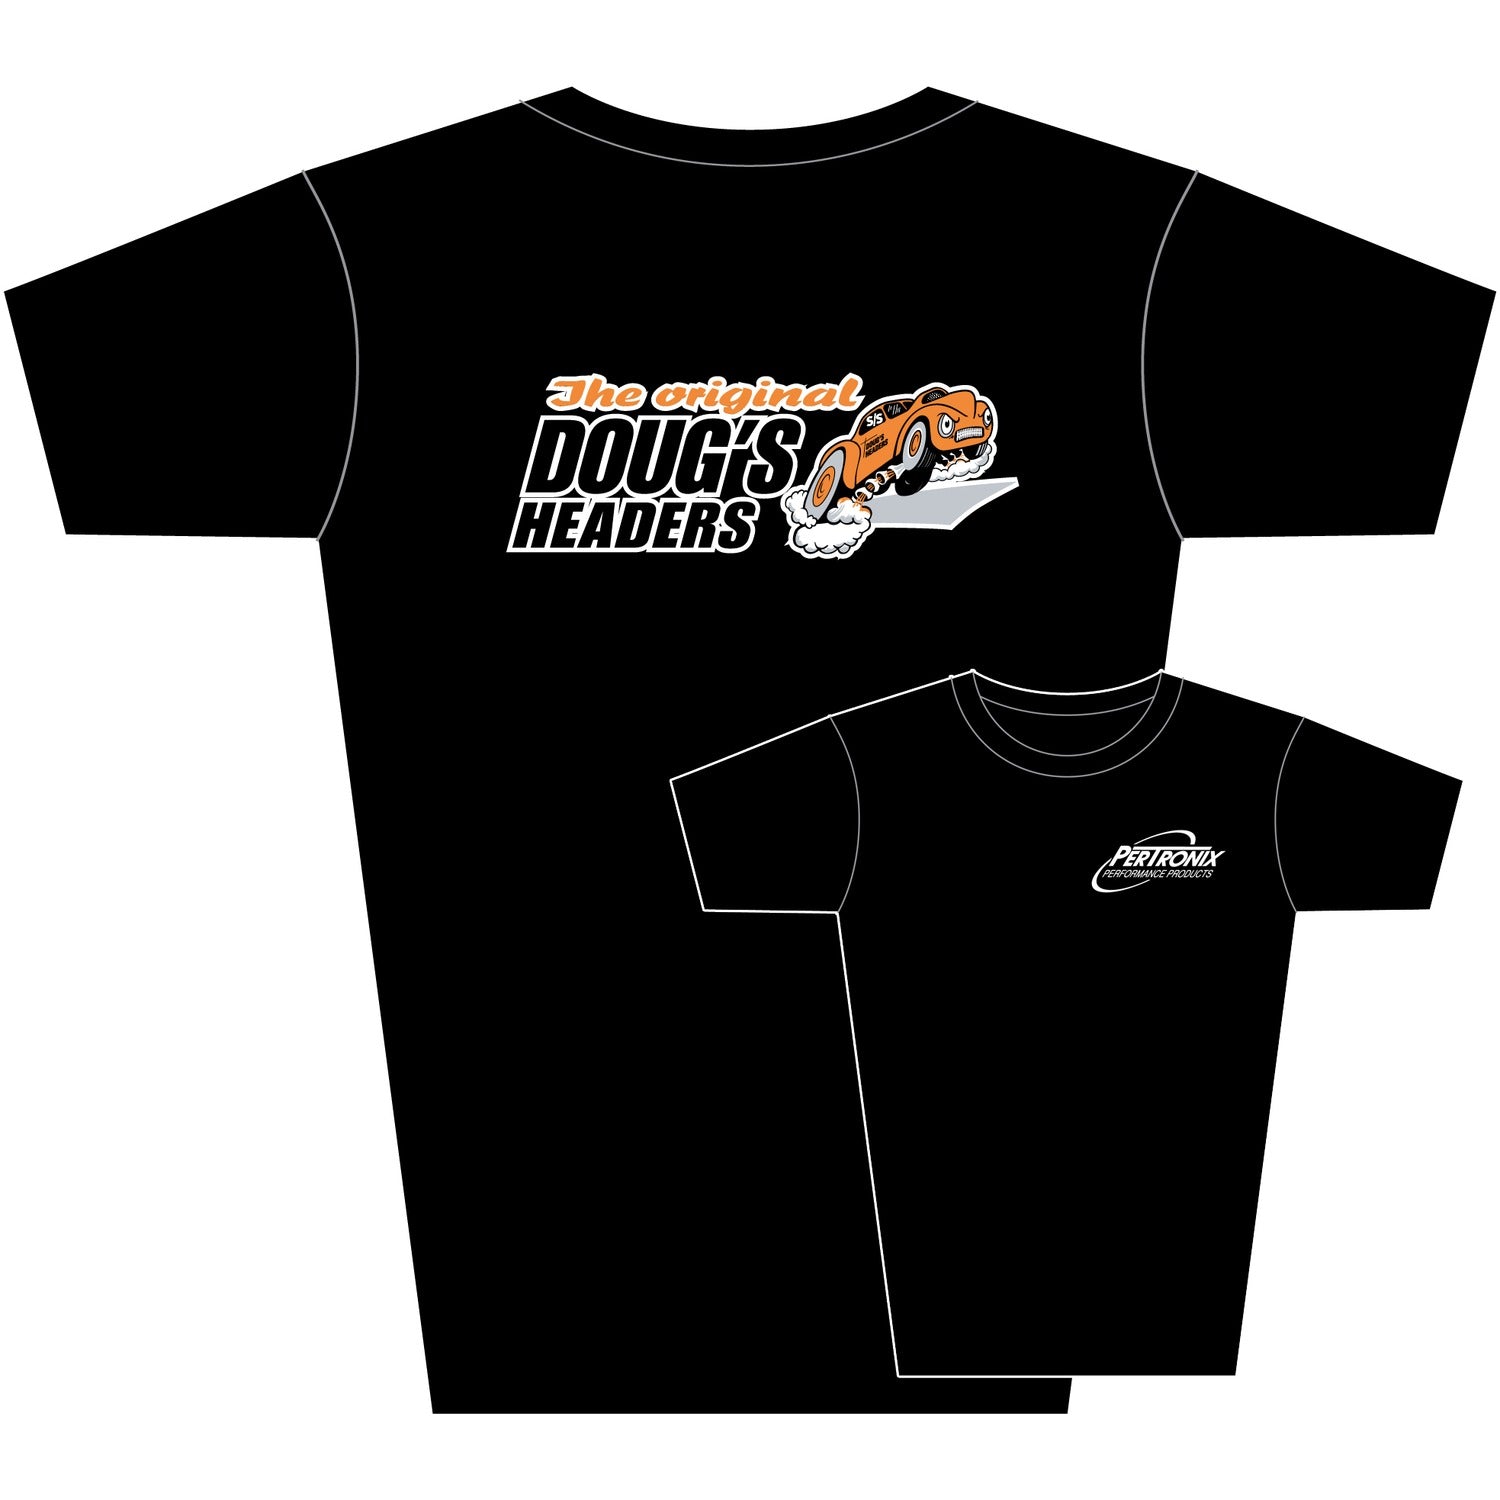 Doug's Headers T-Shirt TS203